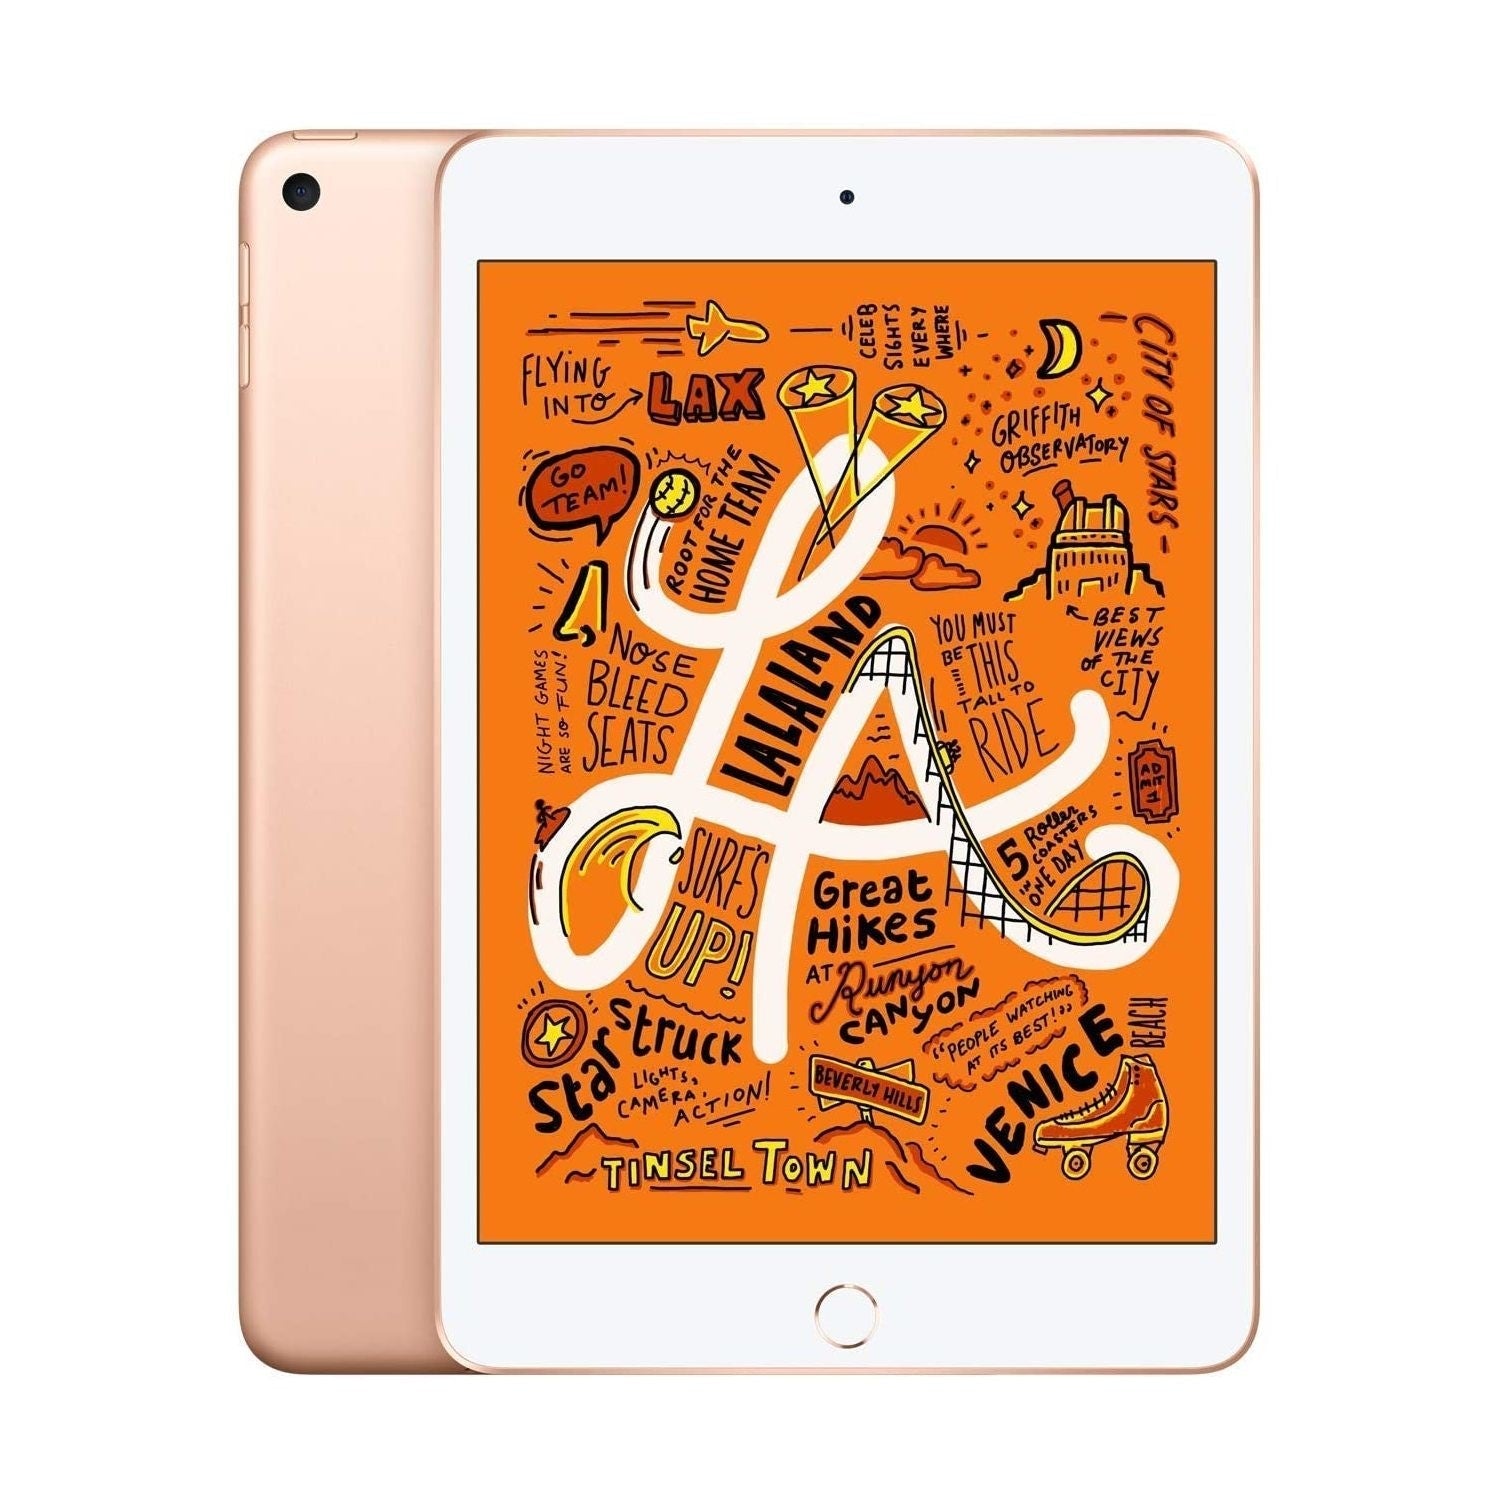 2019 Apple iPad Mini 5 Wi-Fi, 64GB, Gold (MUQY2B/A) - Refurbished Excellent